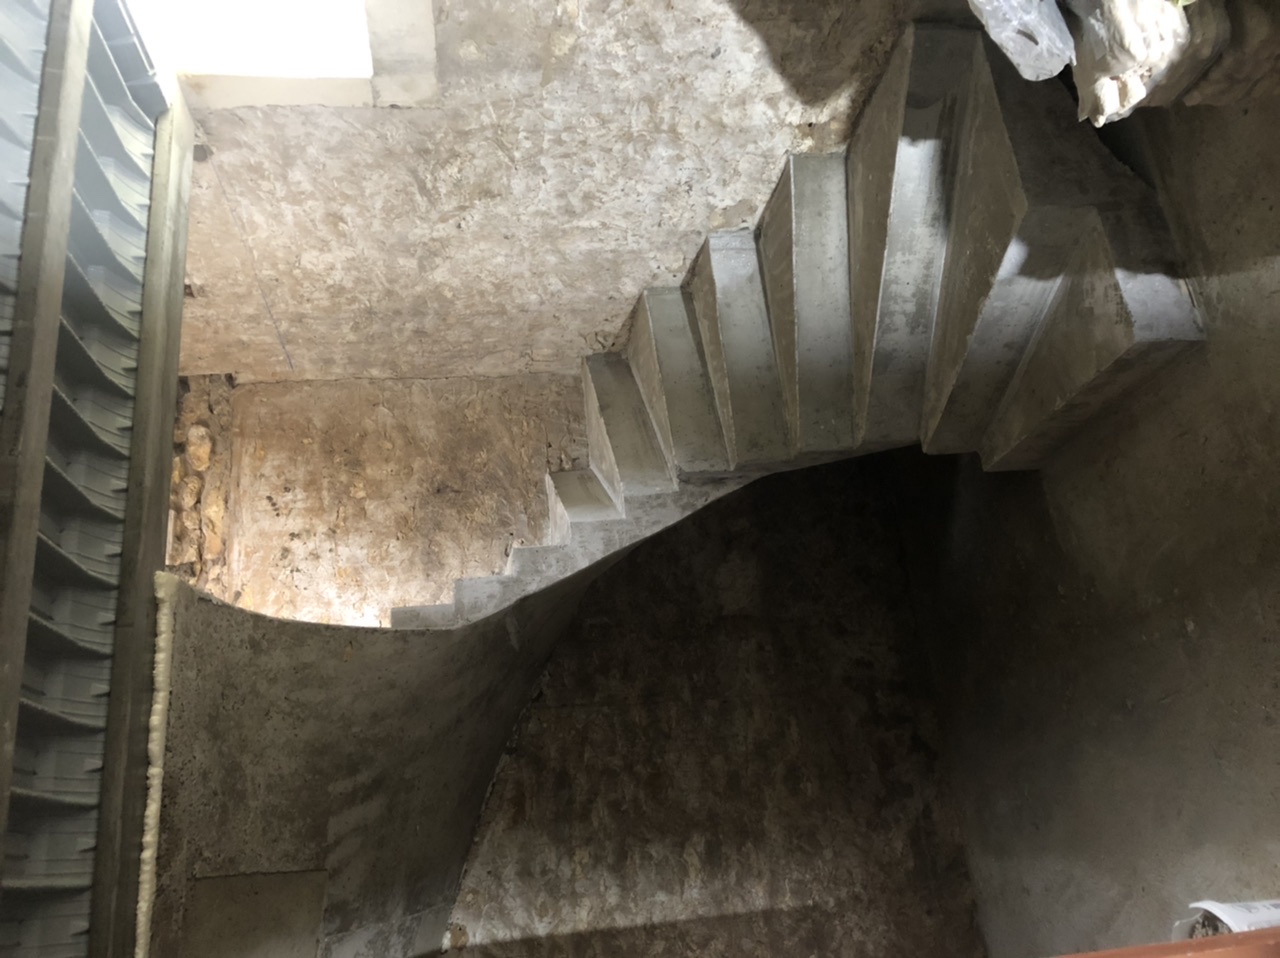 Escalier trois quart tournant qui ressemblant à un escalier hélicoïdal avec des bords extérieurs droits et une lumière rectangulaire